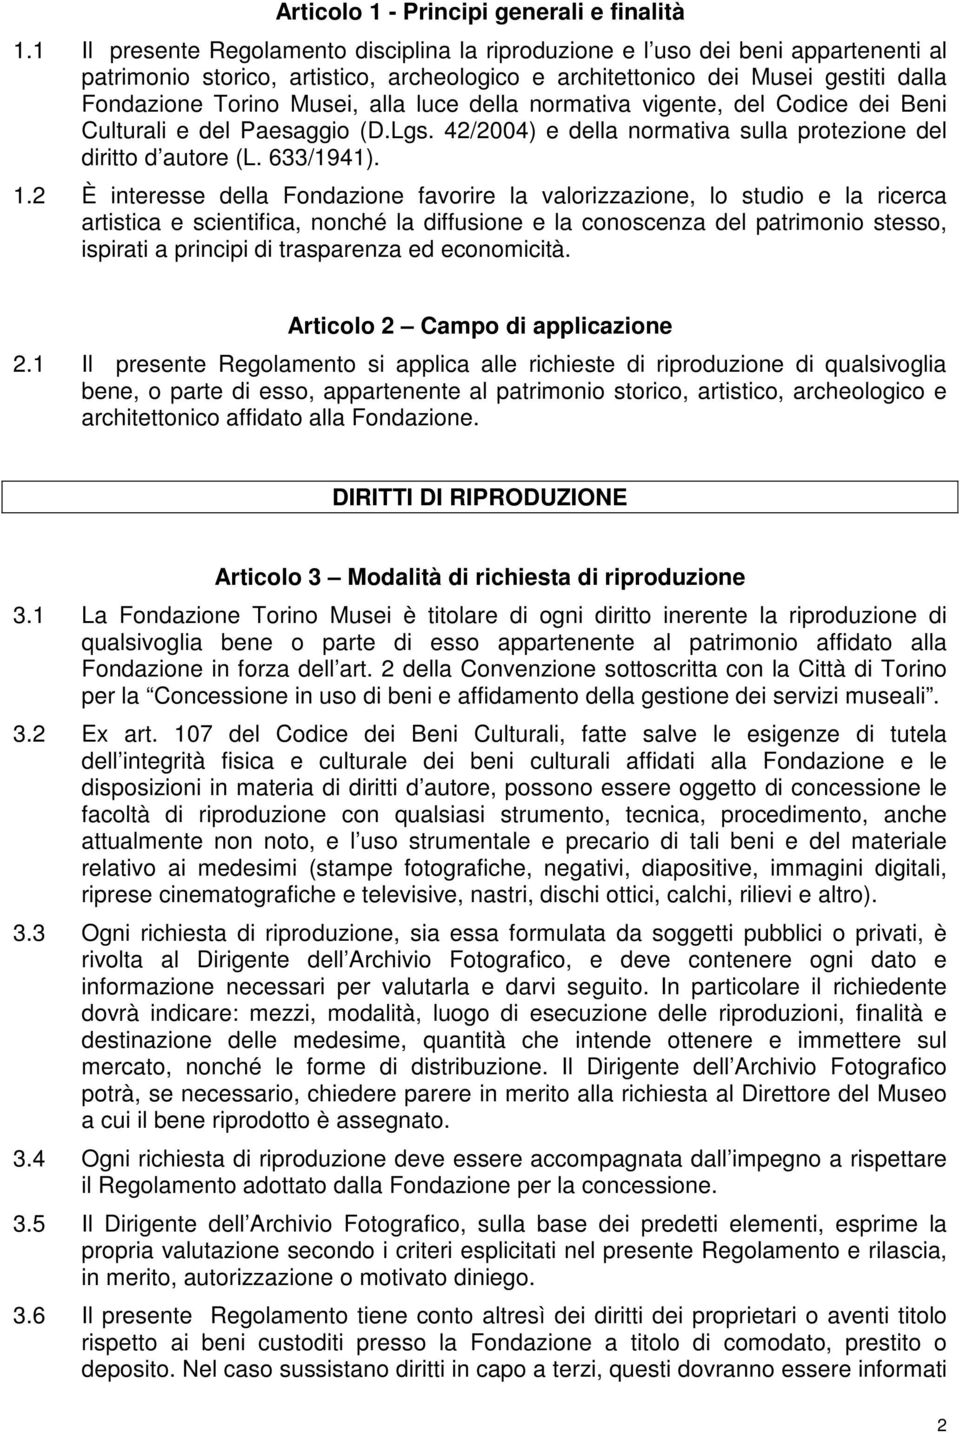 alla luce della normativa vigente, del Codice dei Beni Culturali e del Paesaggio (D.Lgs. 42/2004) e della normativa sulla protezione del diritto d autore (L. 633/1941). 1.